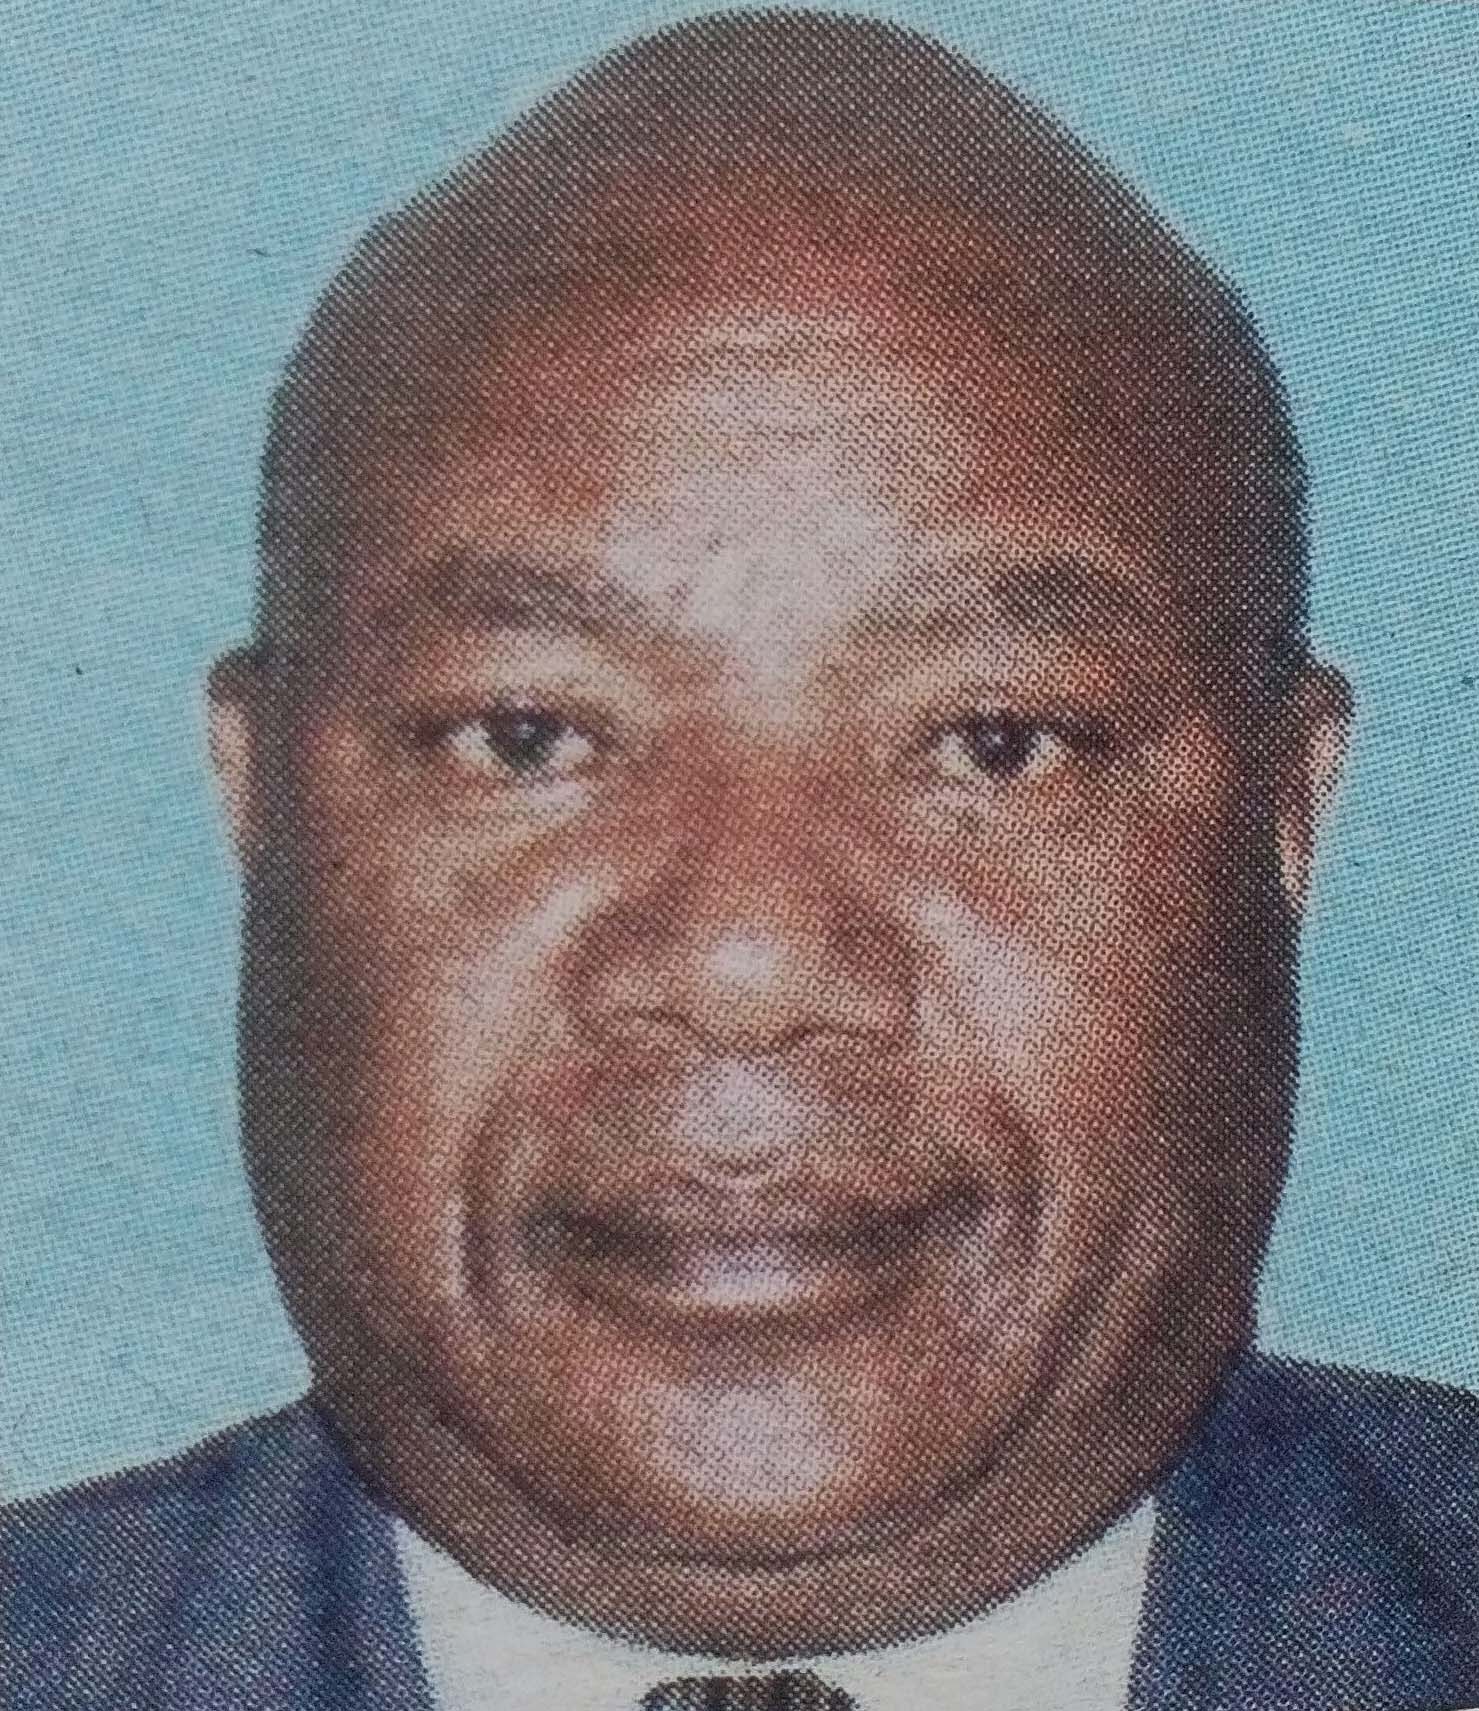 Obituary Image of Evans Kagera Mundia